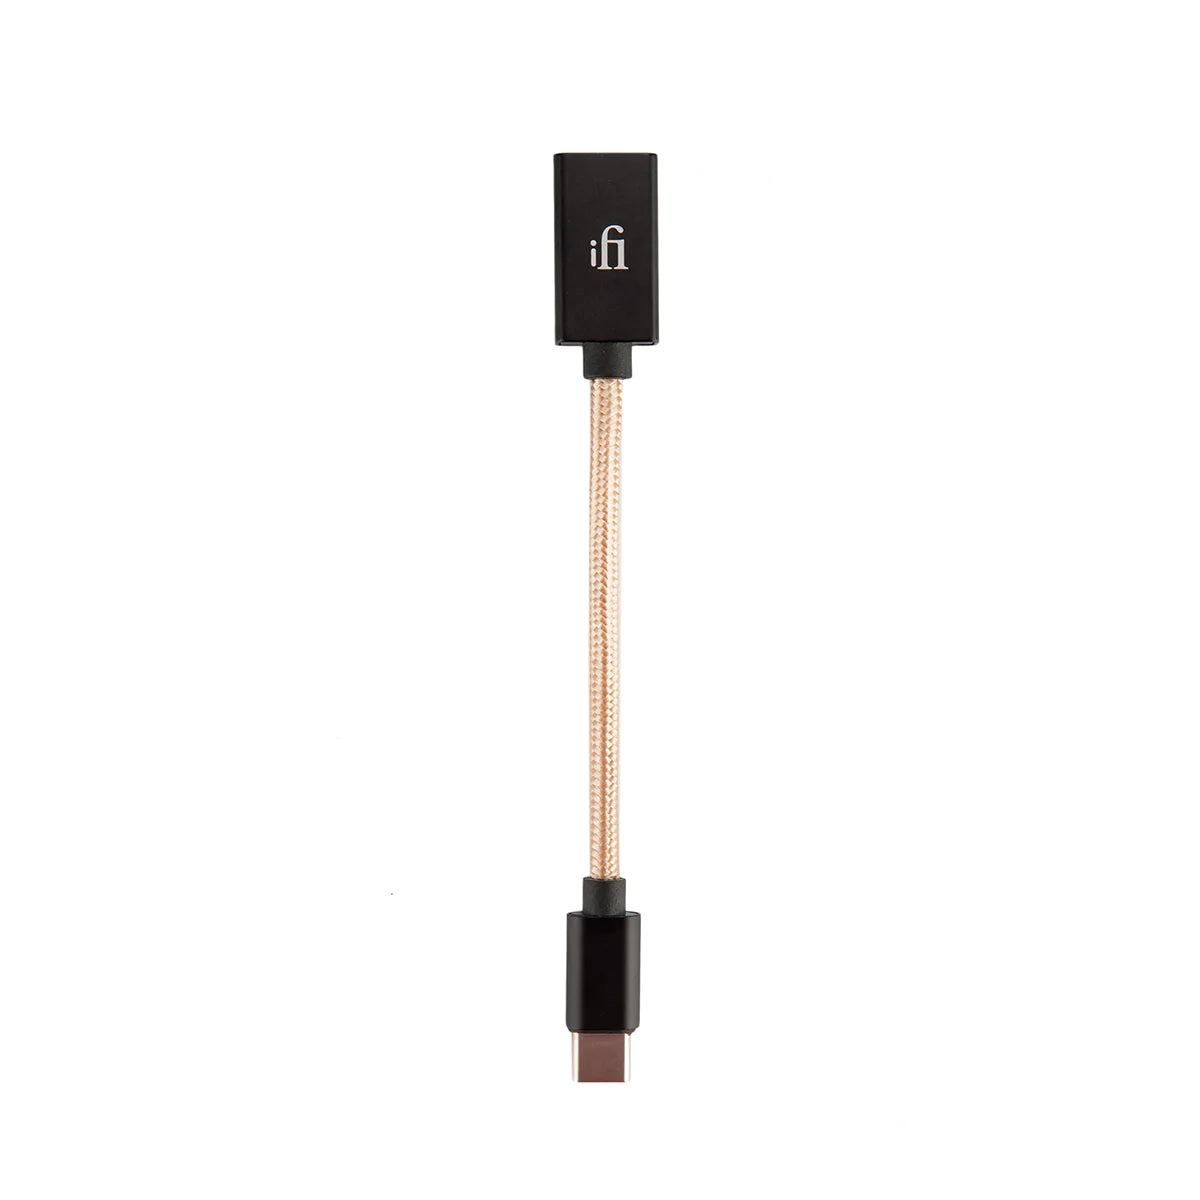 Cable USB-A a USB-C OTG - Sobre Pedido